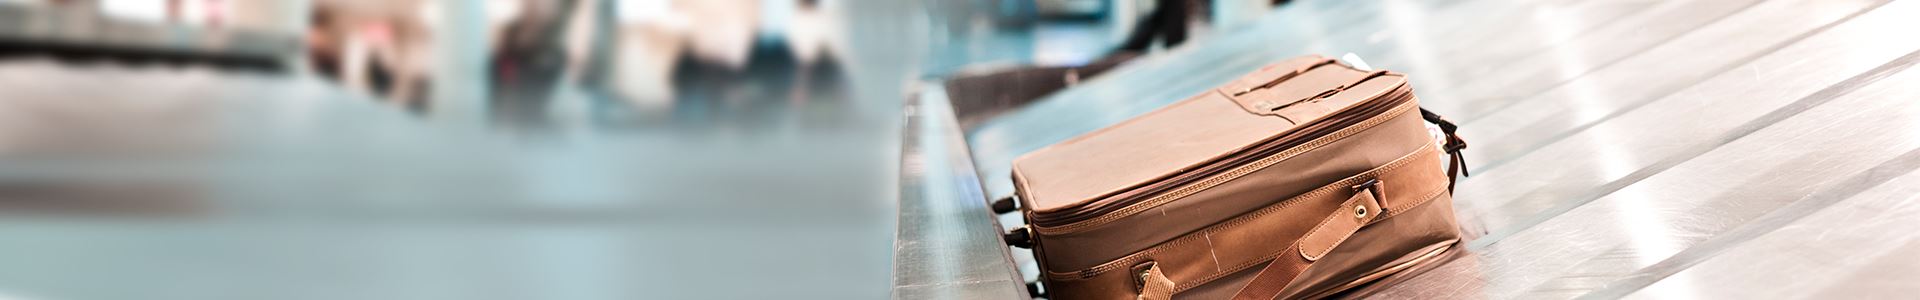 L'immagine mostra una valigia marrone che giace su un nastro trasportatore per bagagli in aeroporto. Accanto non ci sono altre valigie.